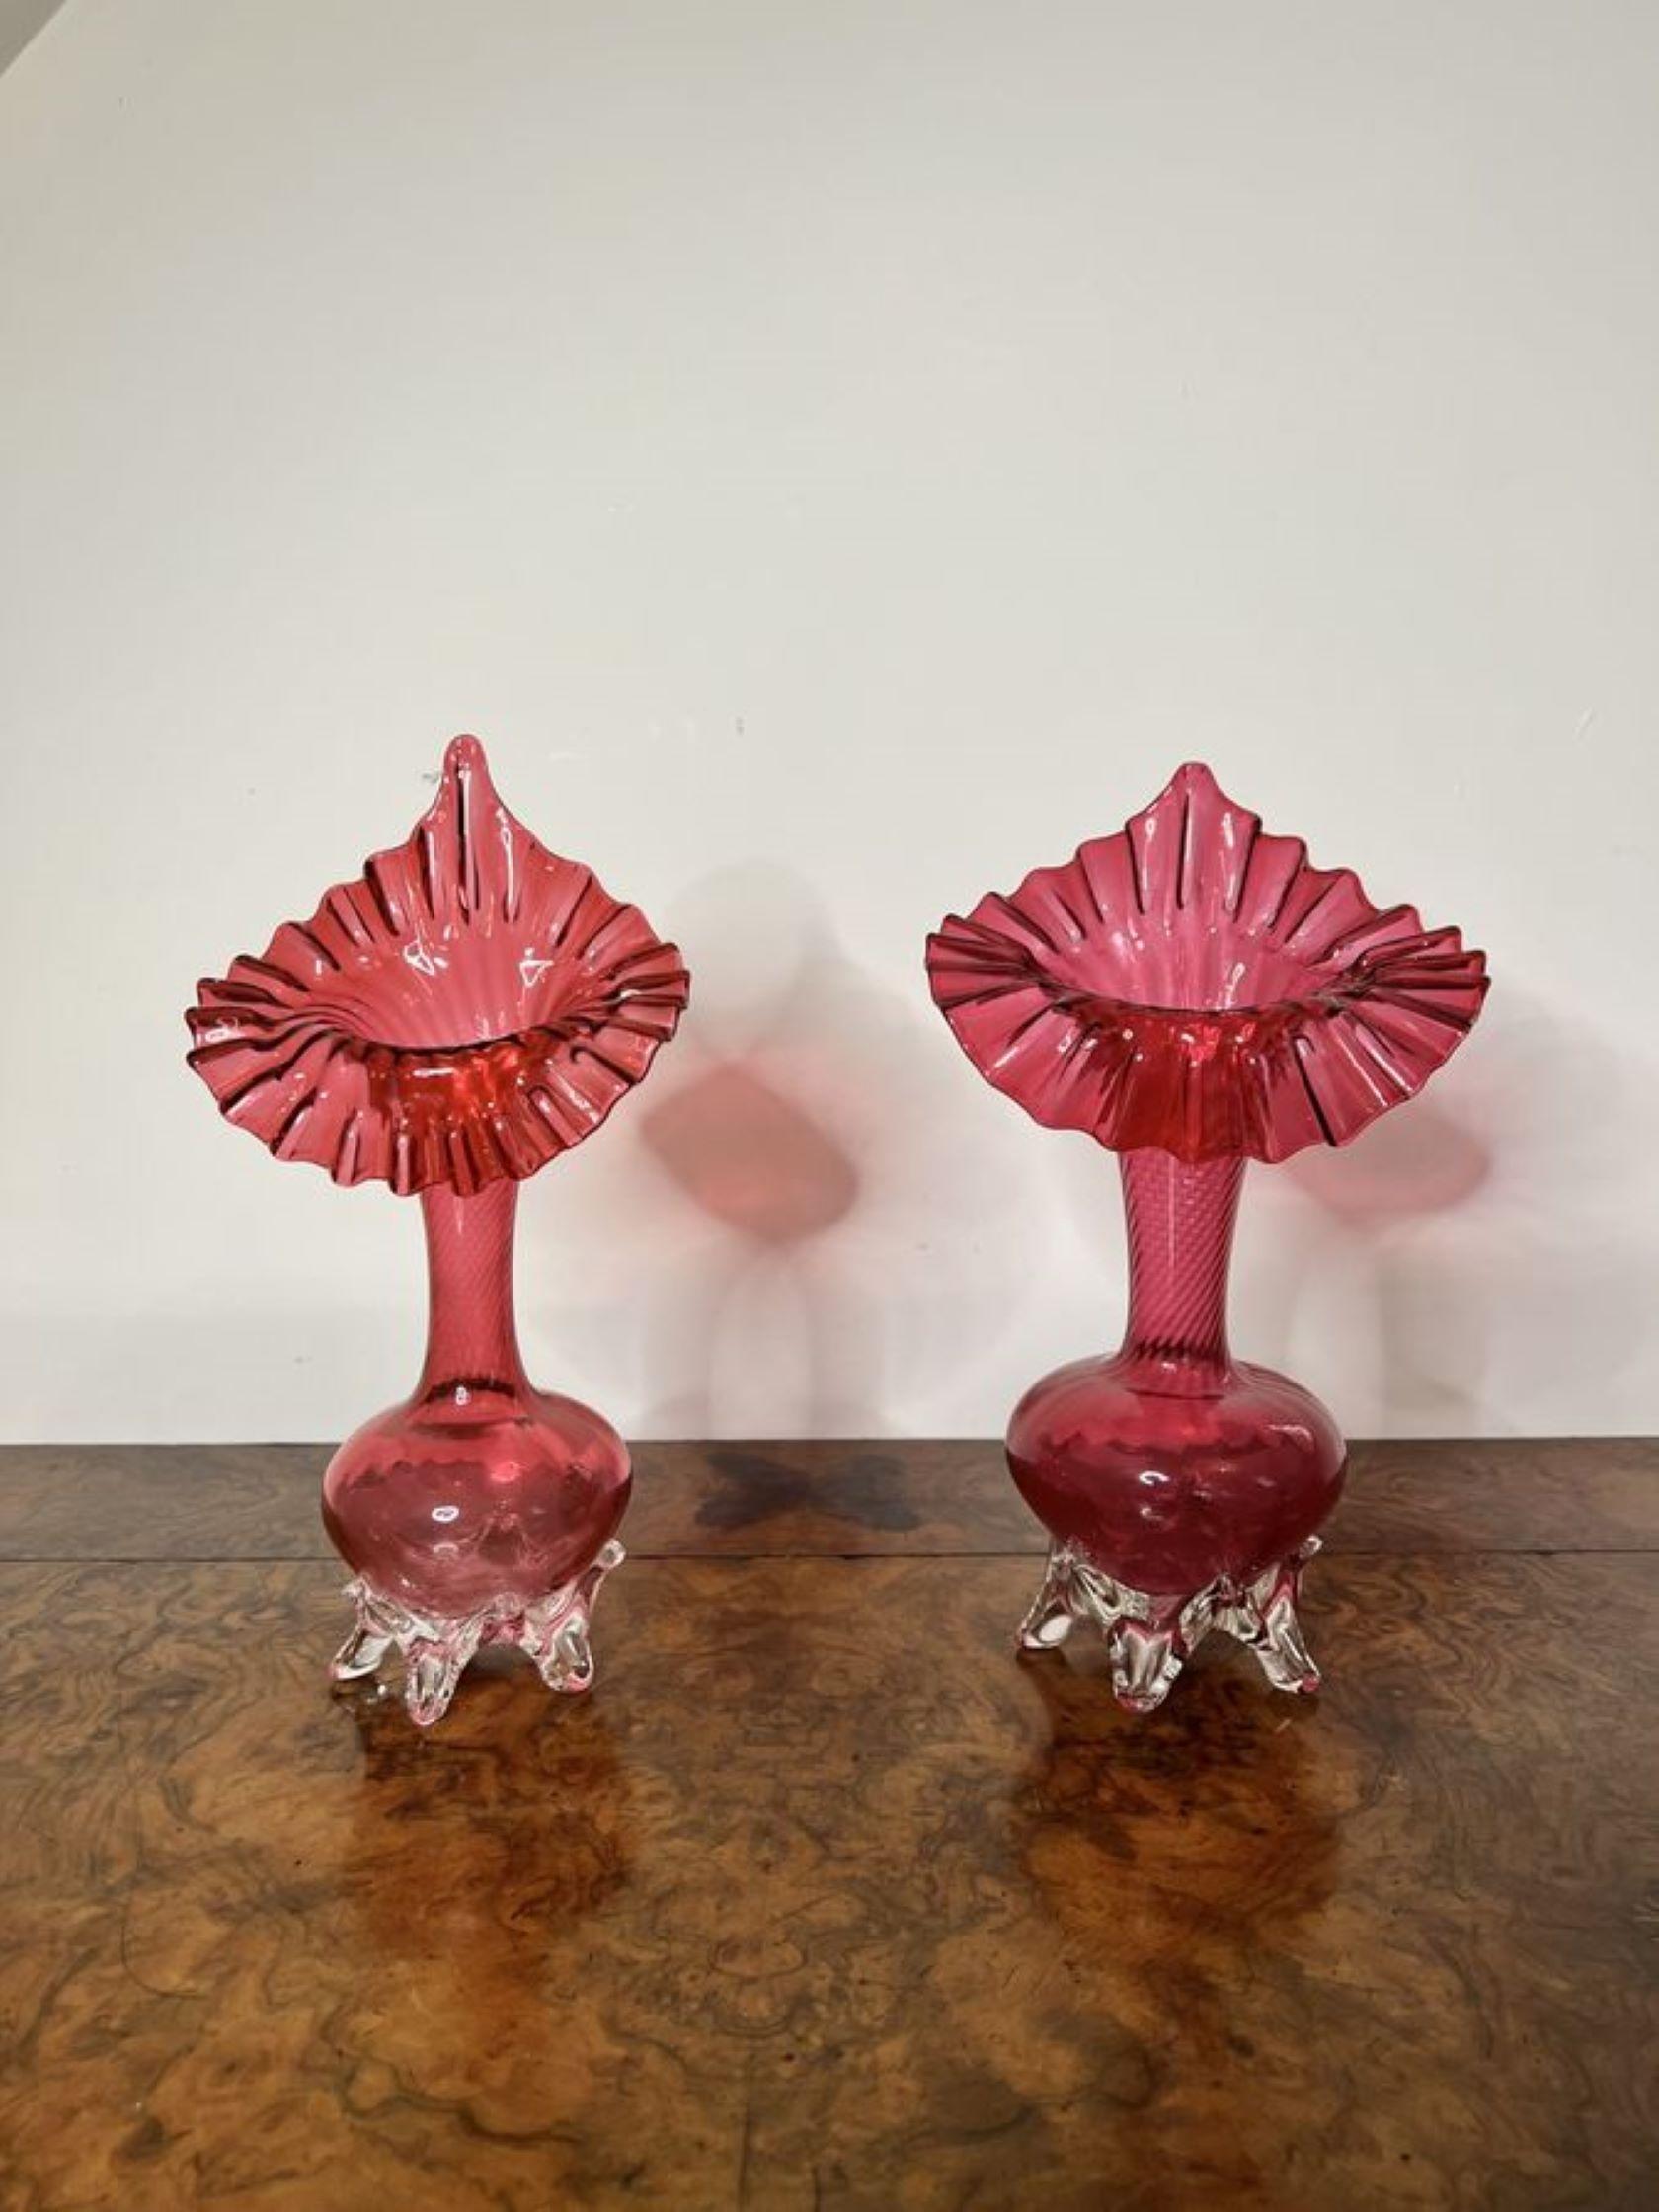 Qualität Paar antike viktorianische Cranberry Glas Jack in der Kanzel Vasen auf runden Basen erhöht.

D. 1860